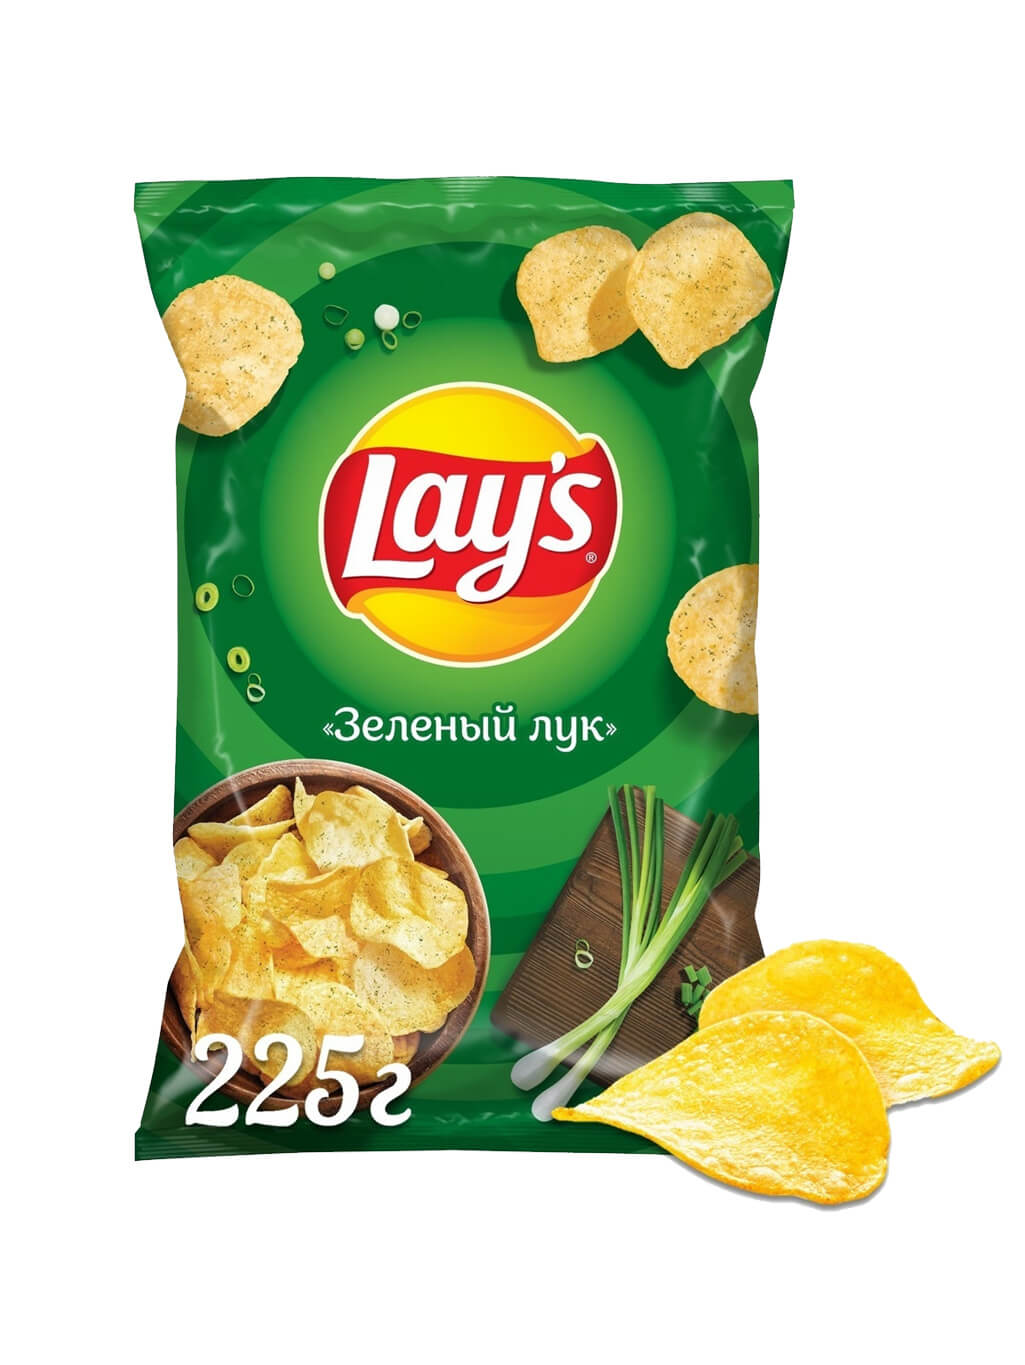 картинка Лэйс Lay's чипсы картофельные Зеленый лук 225 гр